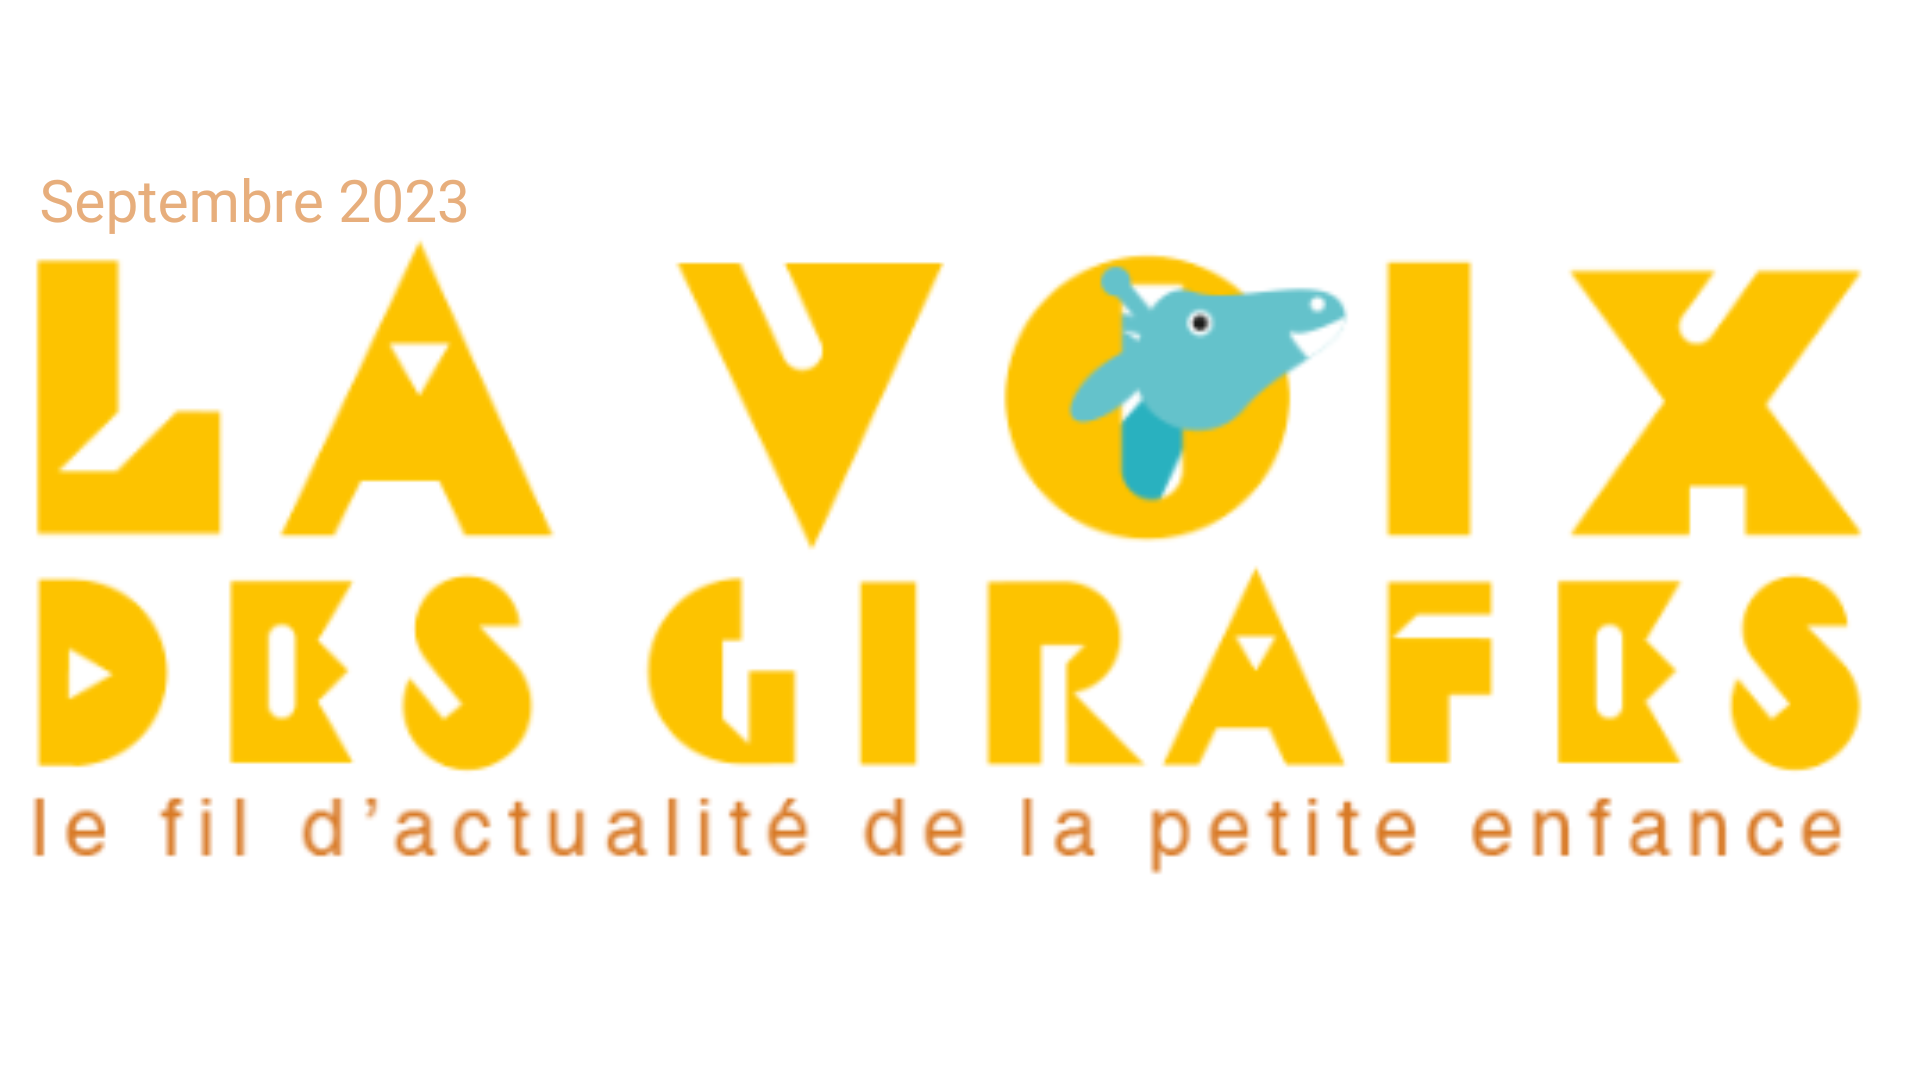 Lire la newsletter La Voix des Girafes #Septembre